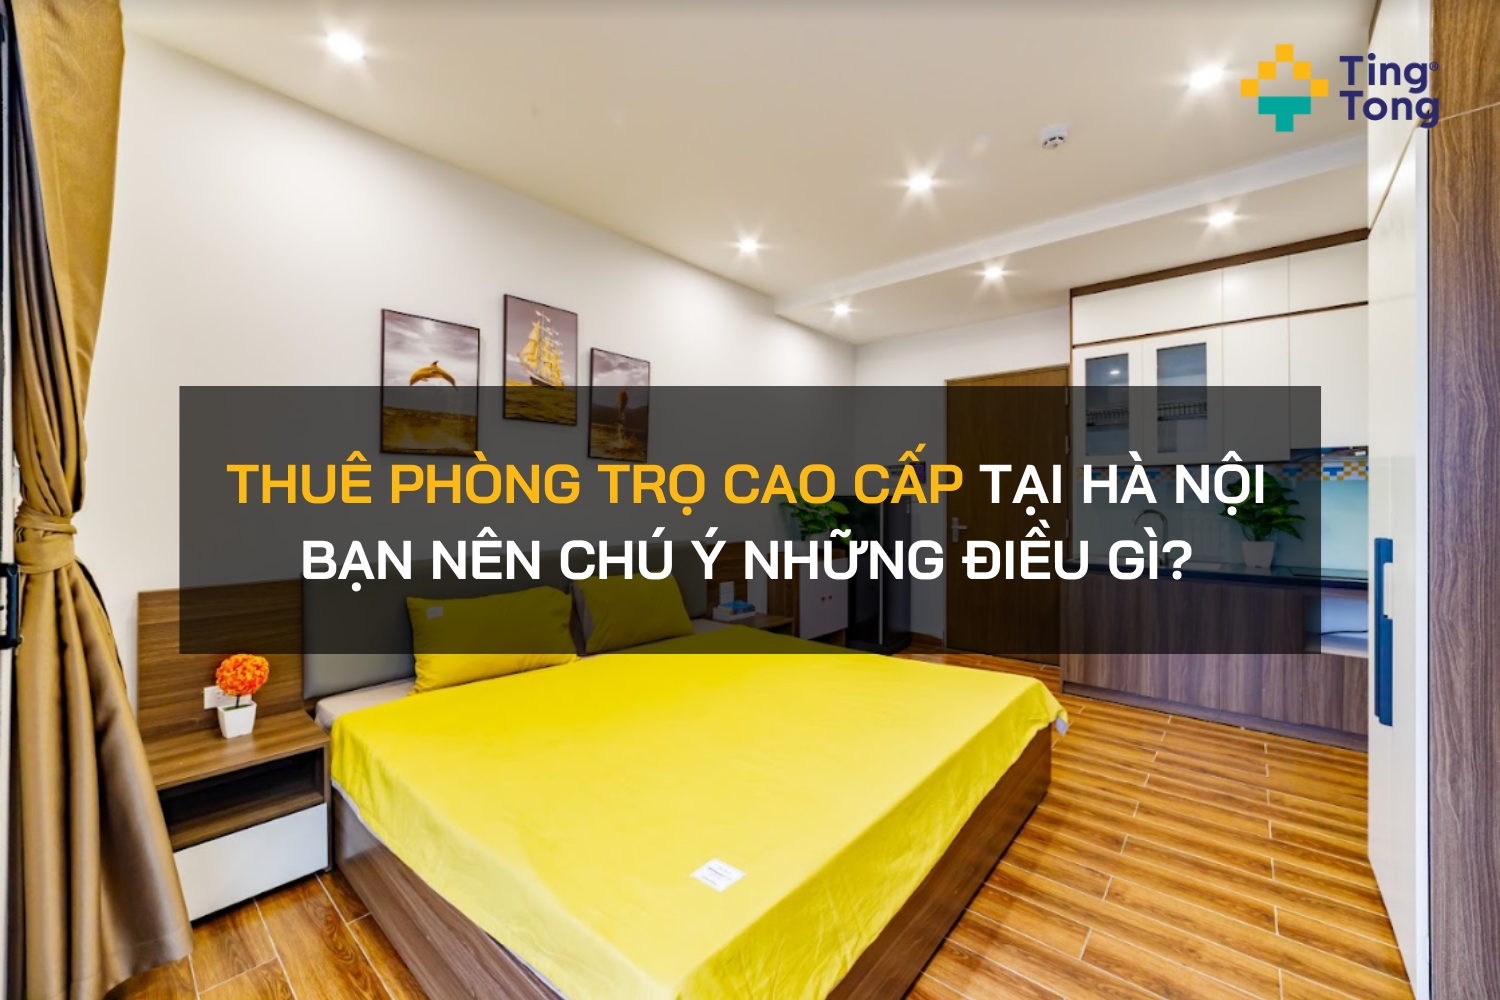 Thuê phòng trọ cao cấp tại Hà Nội bạn nên chú ý những điều gì?